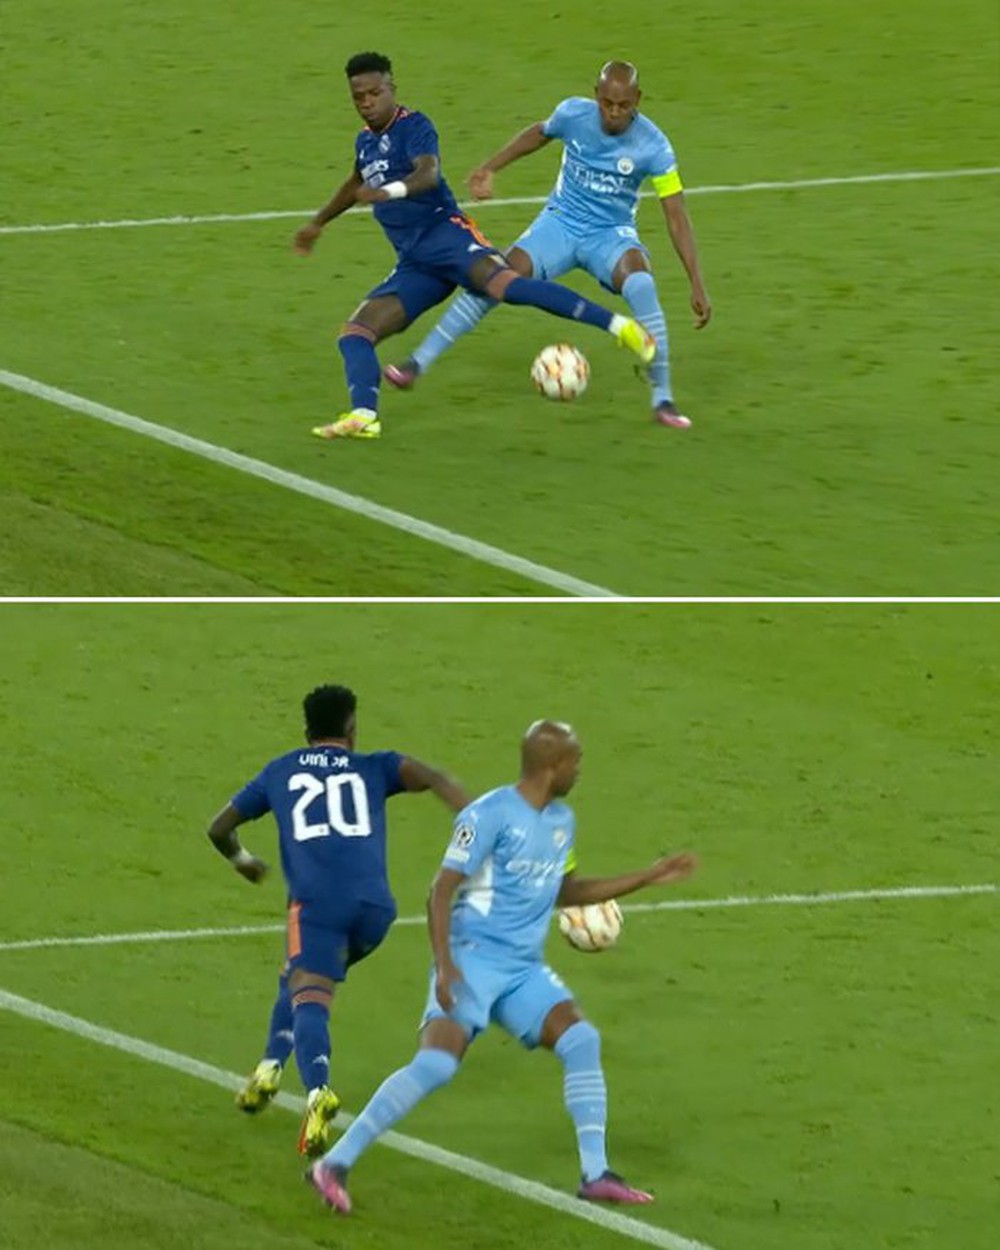 Đỉnh cao kỹ thuật: Vinicius bỏ bóng xâu kim Fernandinho, thoát xuống như một cơn lốc và ghi bàn - Ảnh 1.